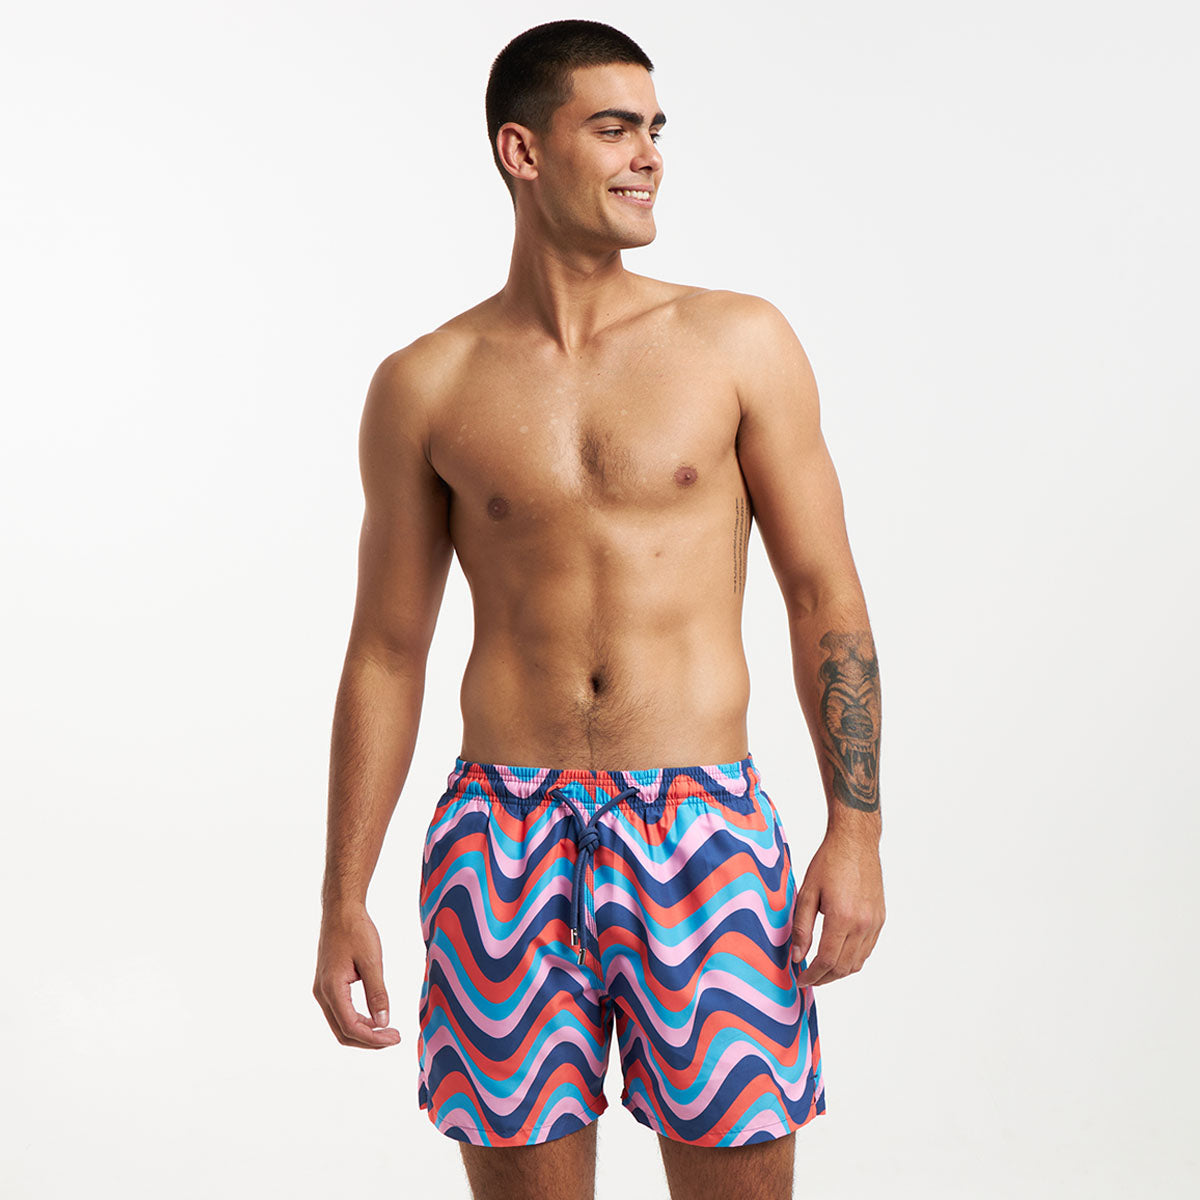 Swim Shorts - Retro Stripes | 80s